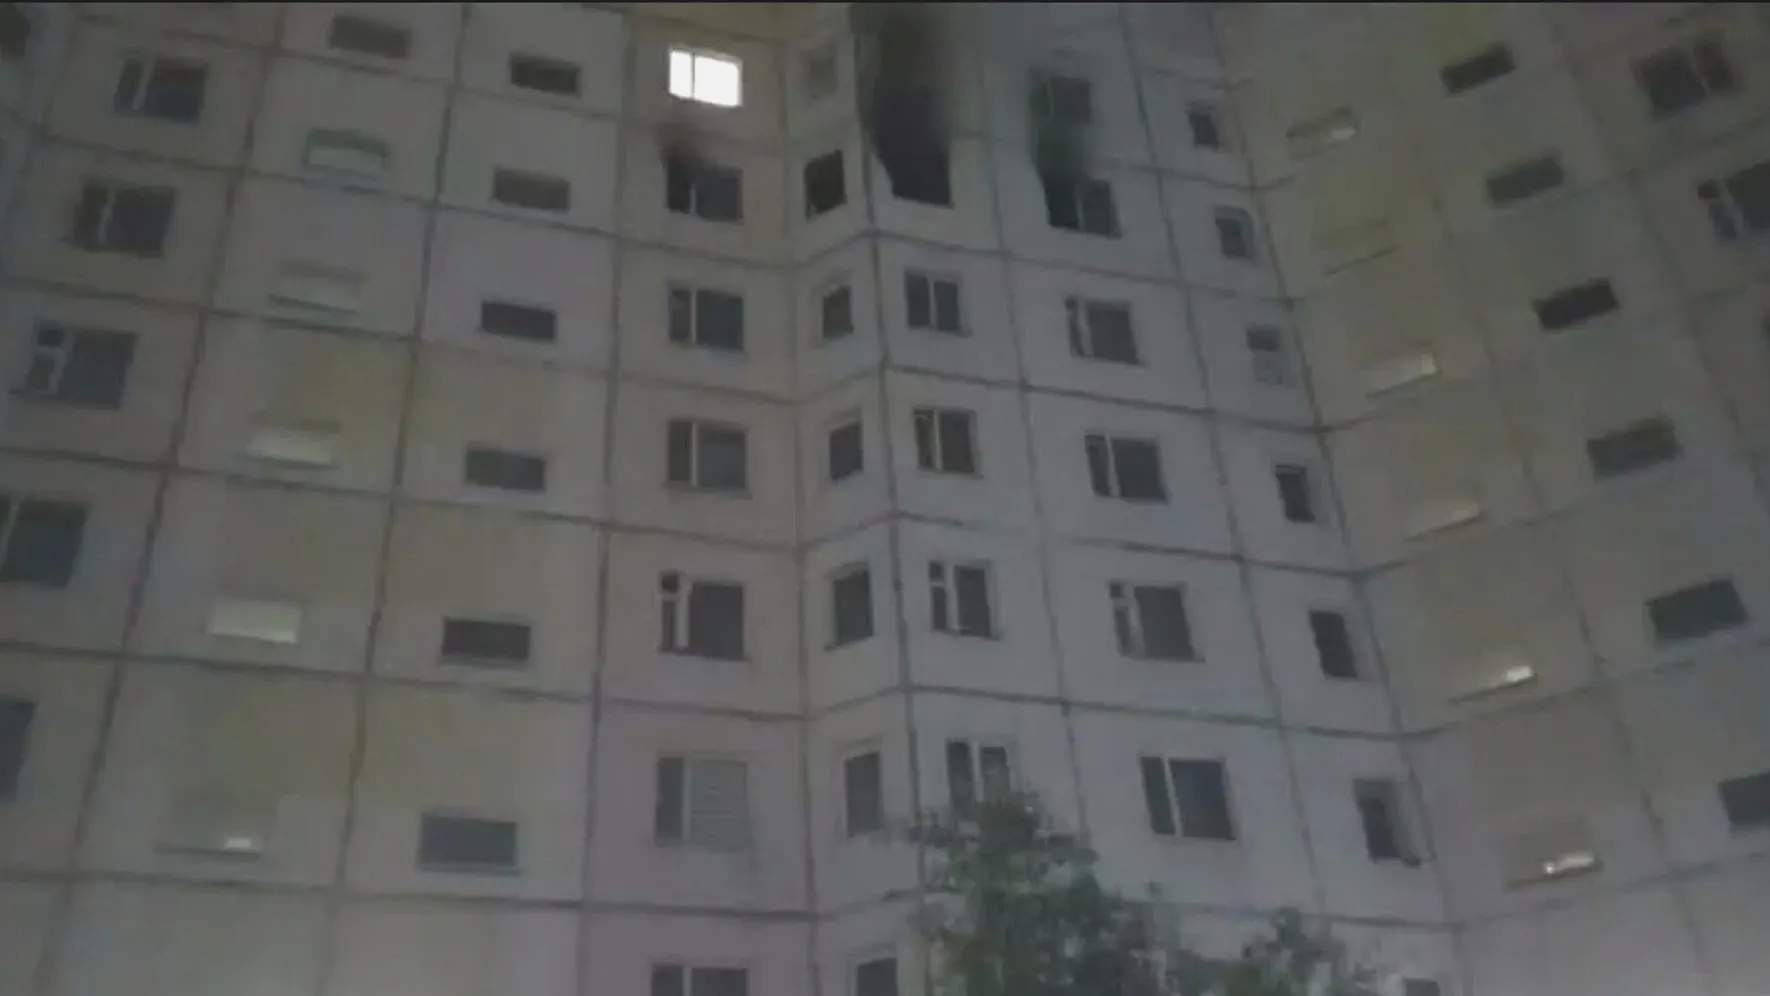 Квартира пострадала от огня по всей площади. Фото: yamal-media.ru